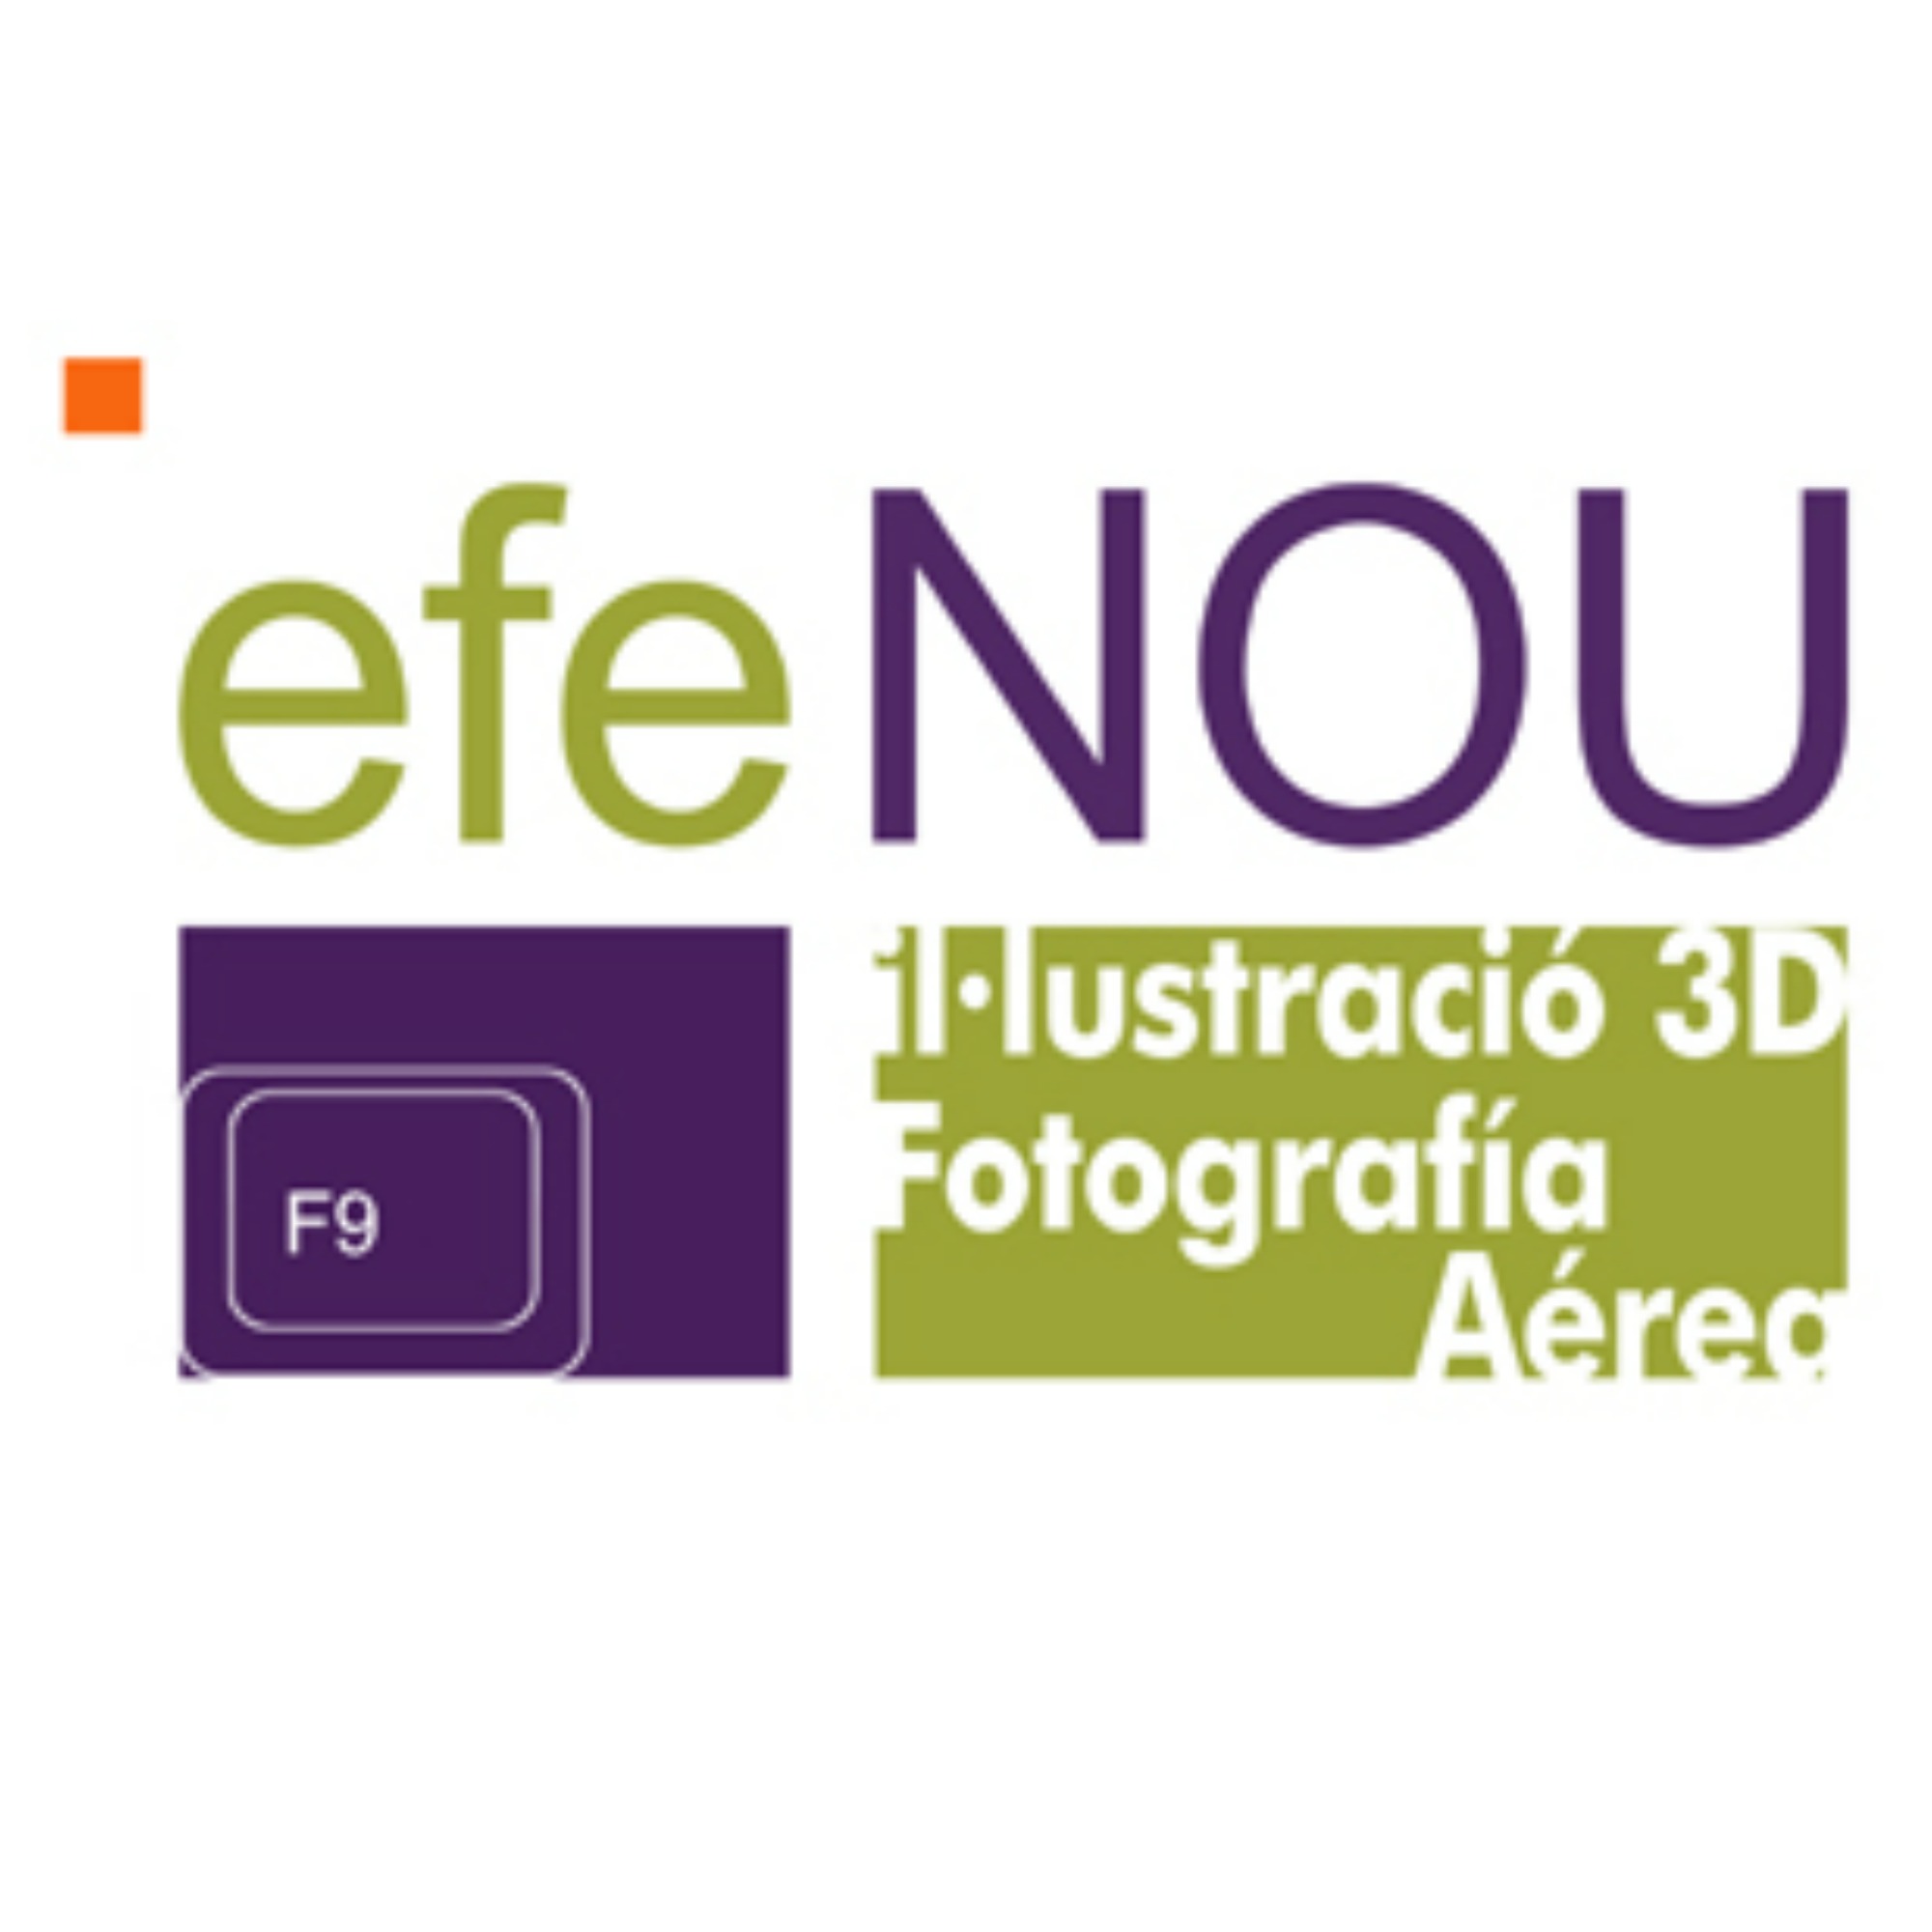 Efenou - Foto Aérea & 3D